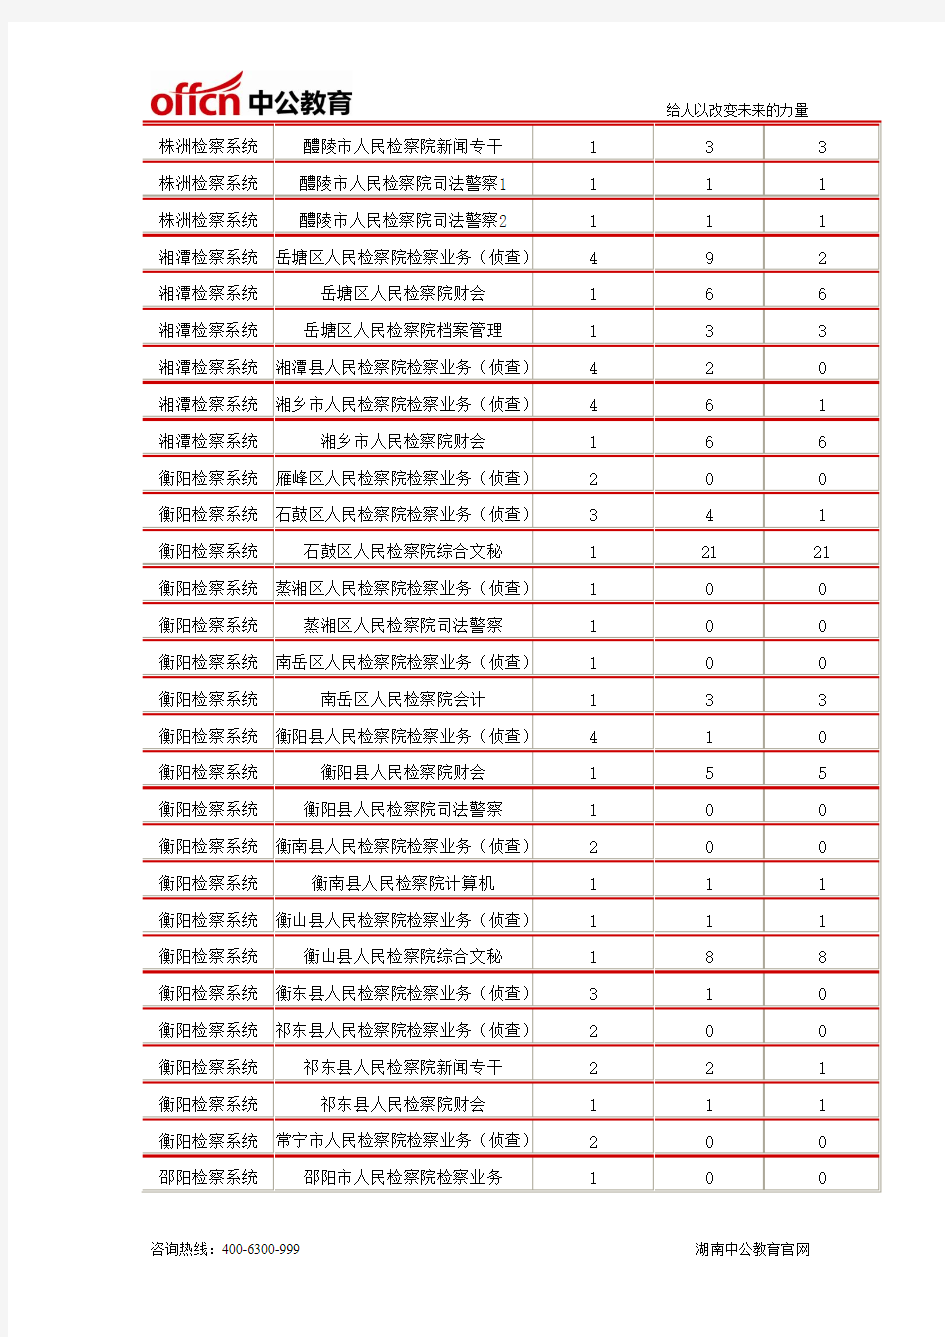 截止到3月10日8时,2014年湖南检察院系统报名人数统计